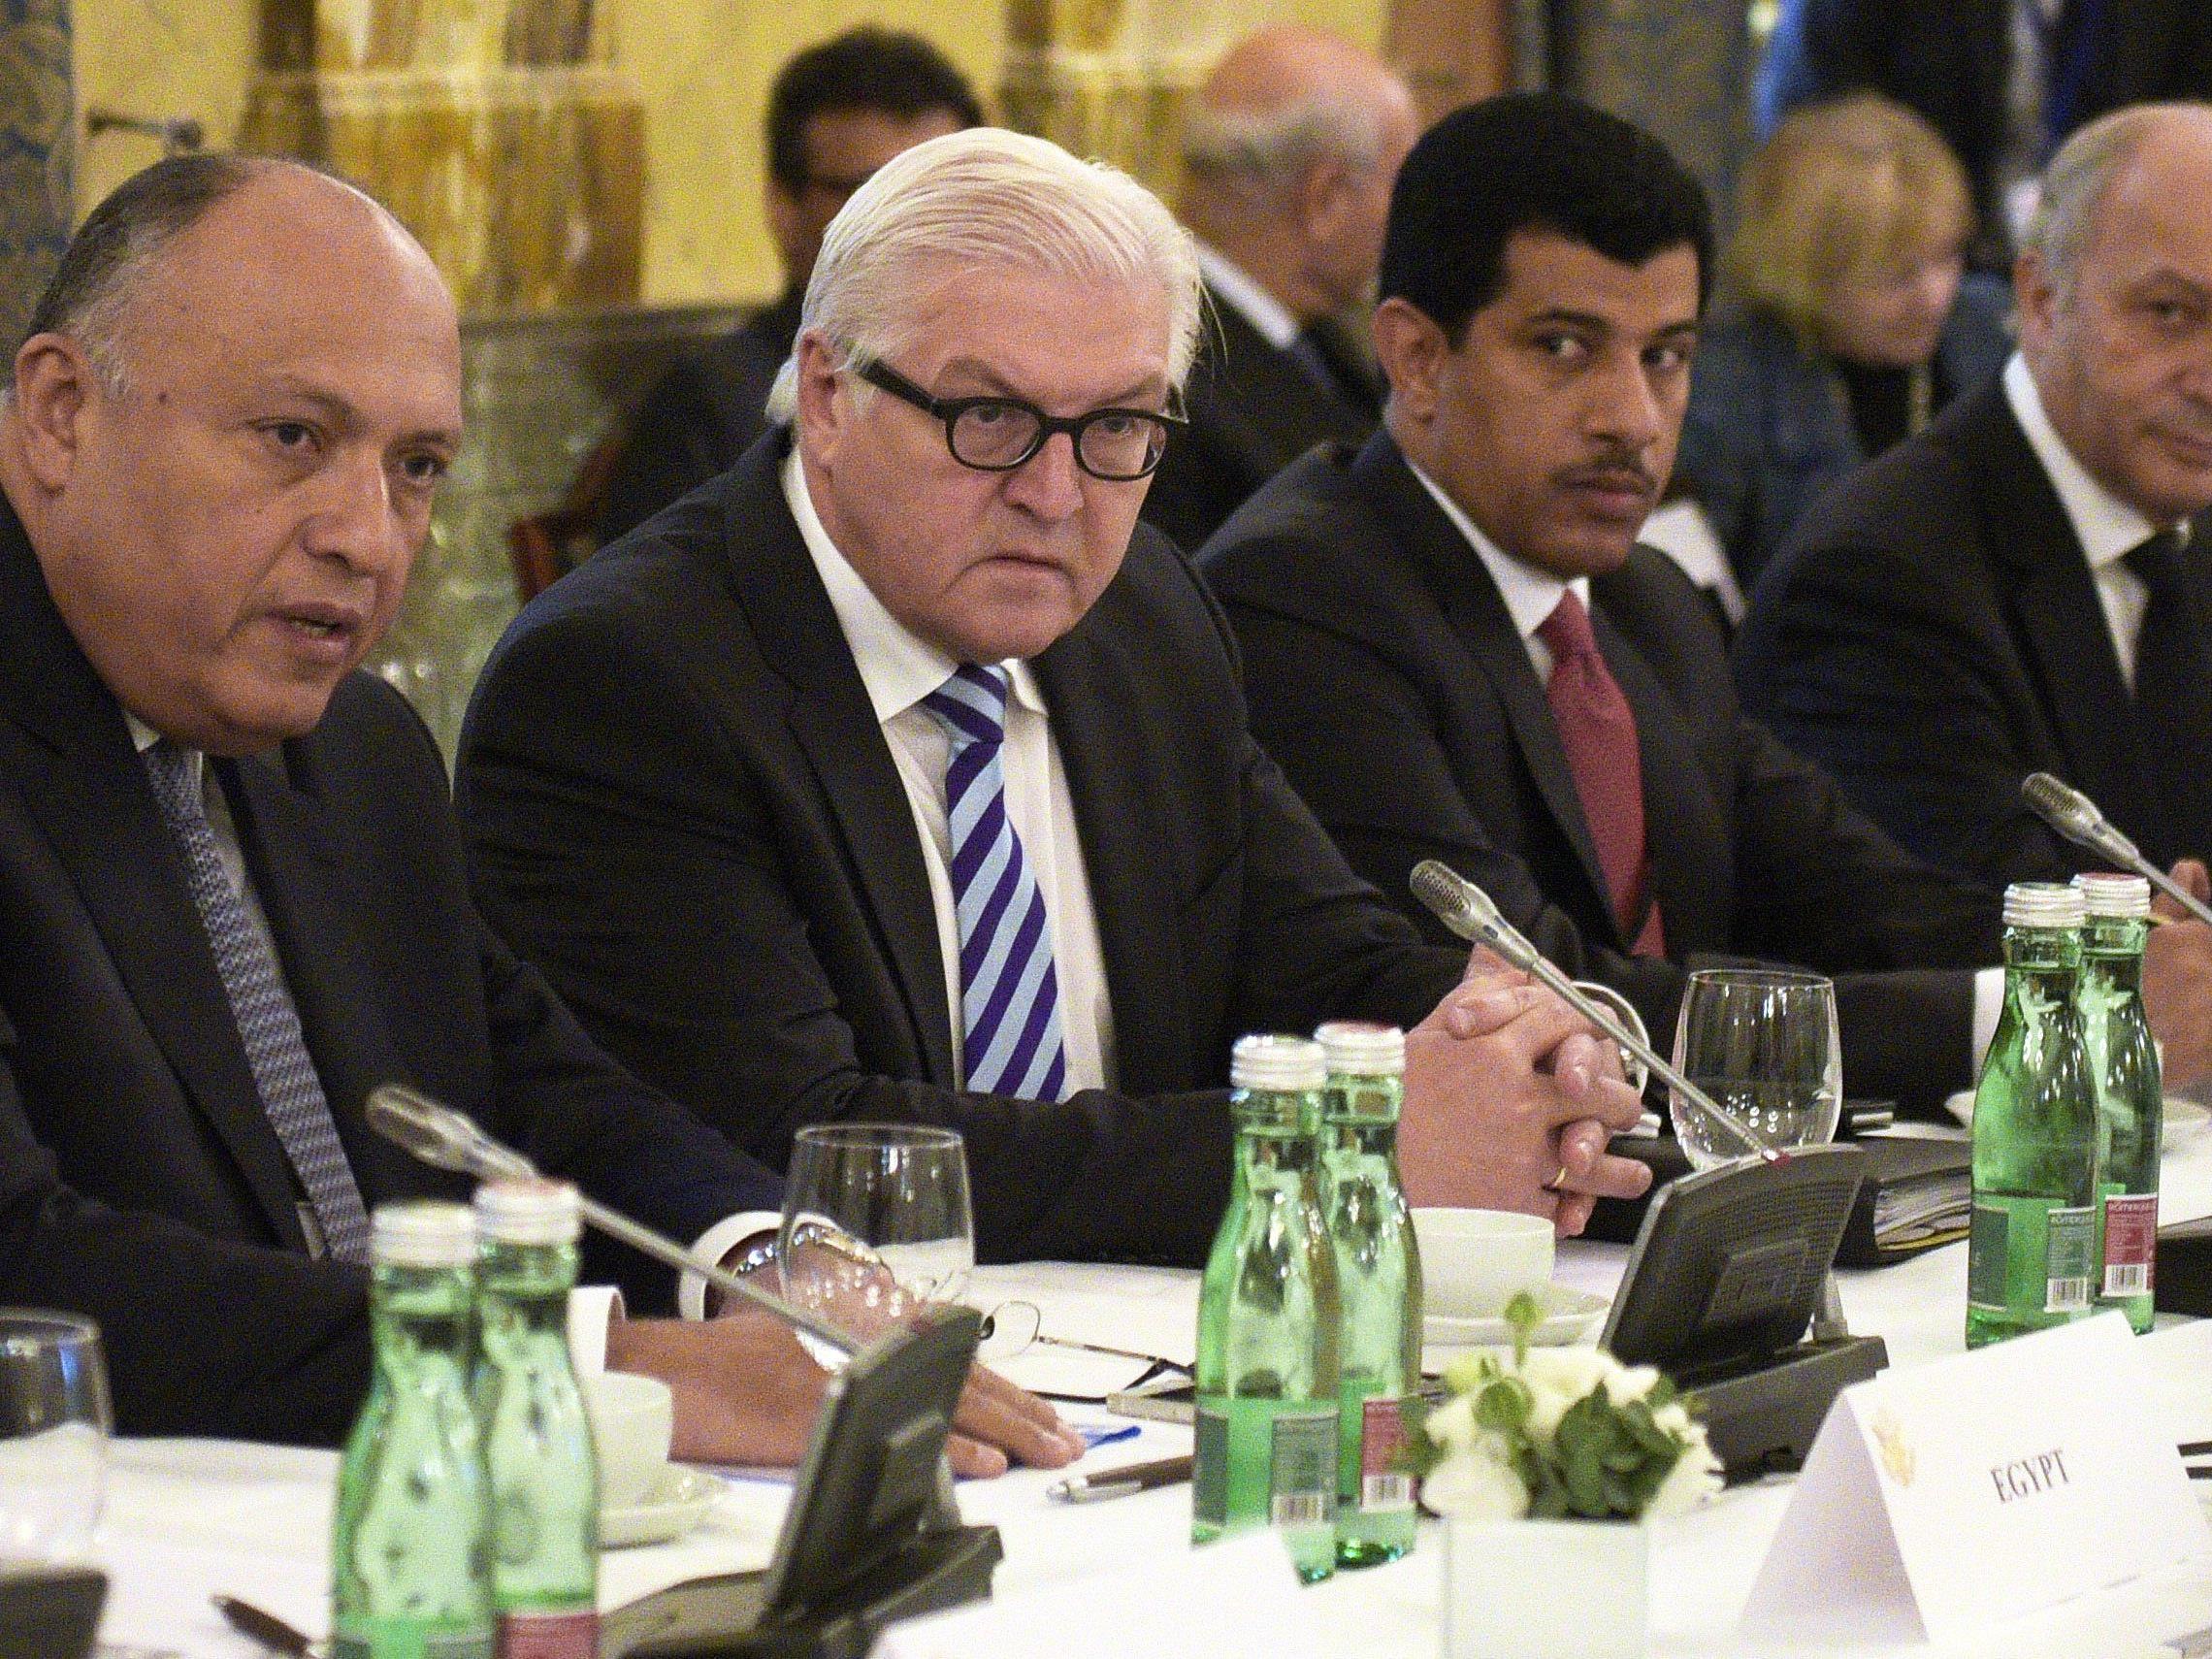 Der deutsche Außenminister Steinmeier verkündete die Einigung bei der Syrien-Konferenz.